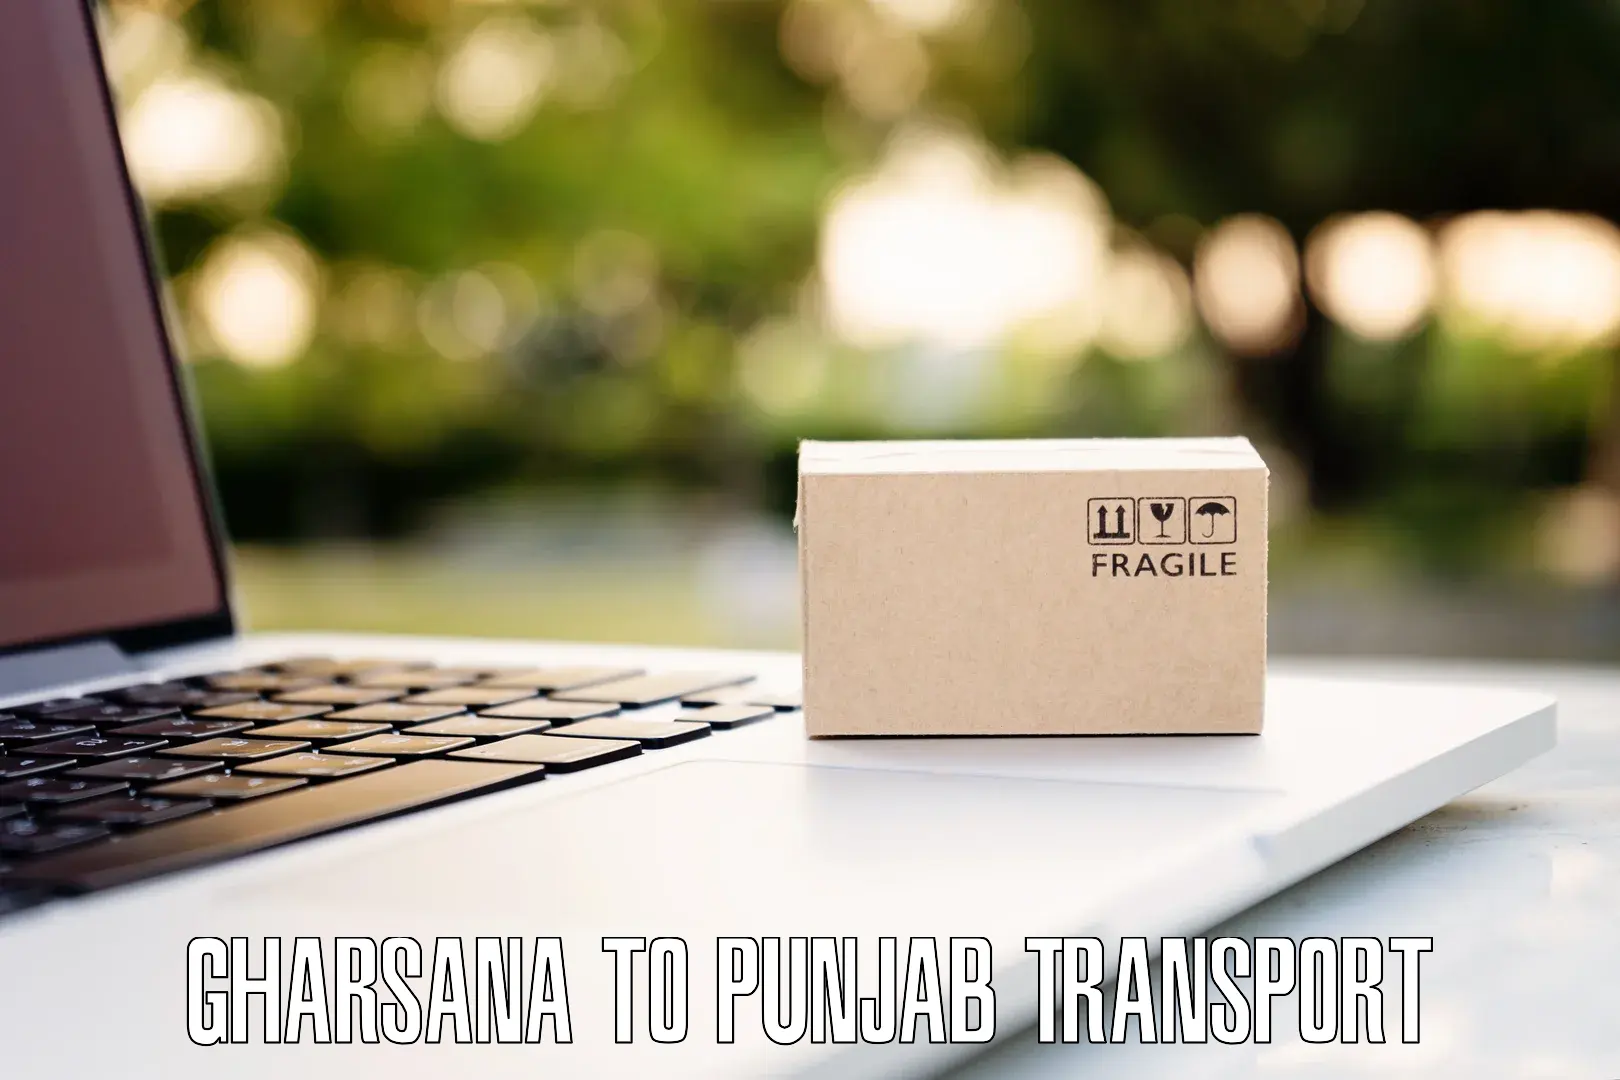 Online transport service Gharsana to Muktsar